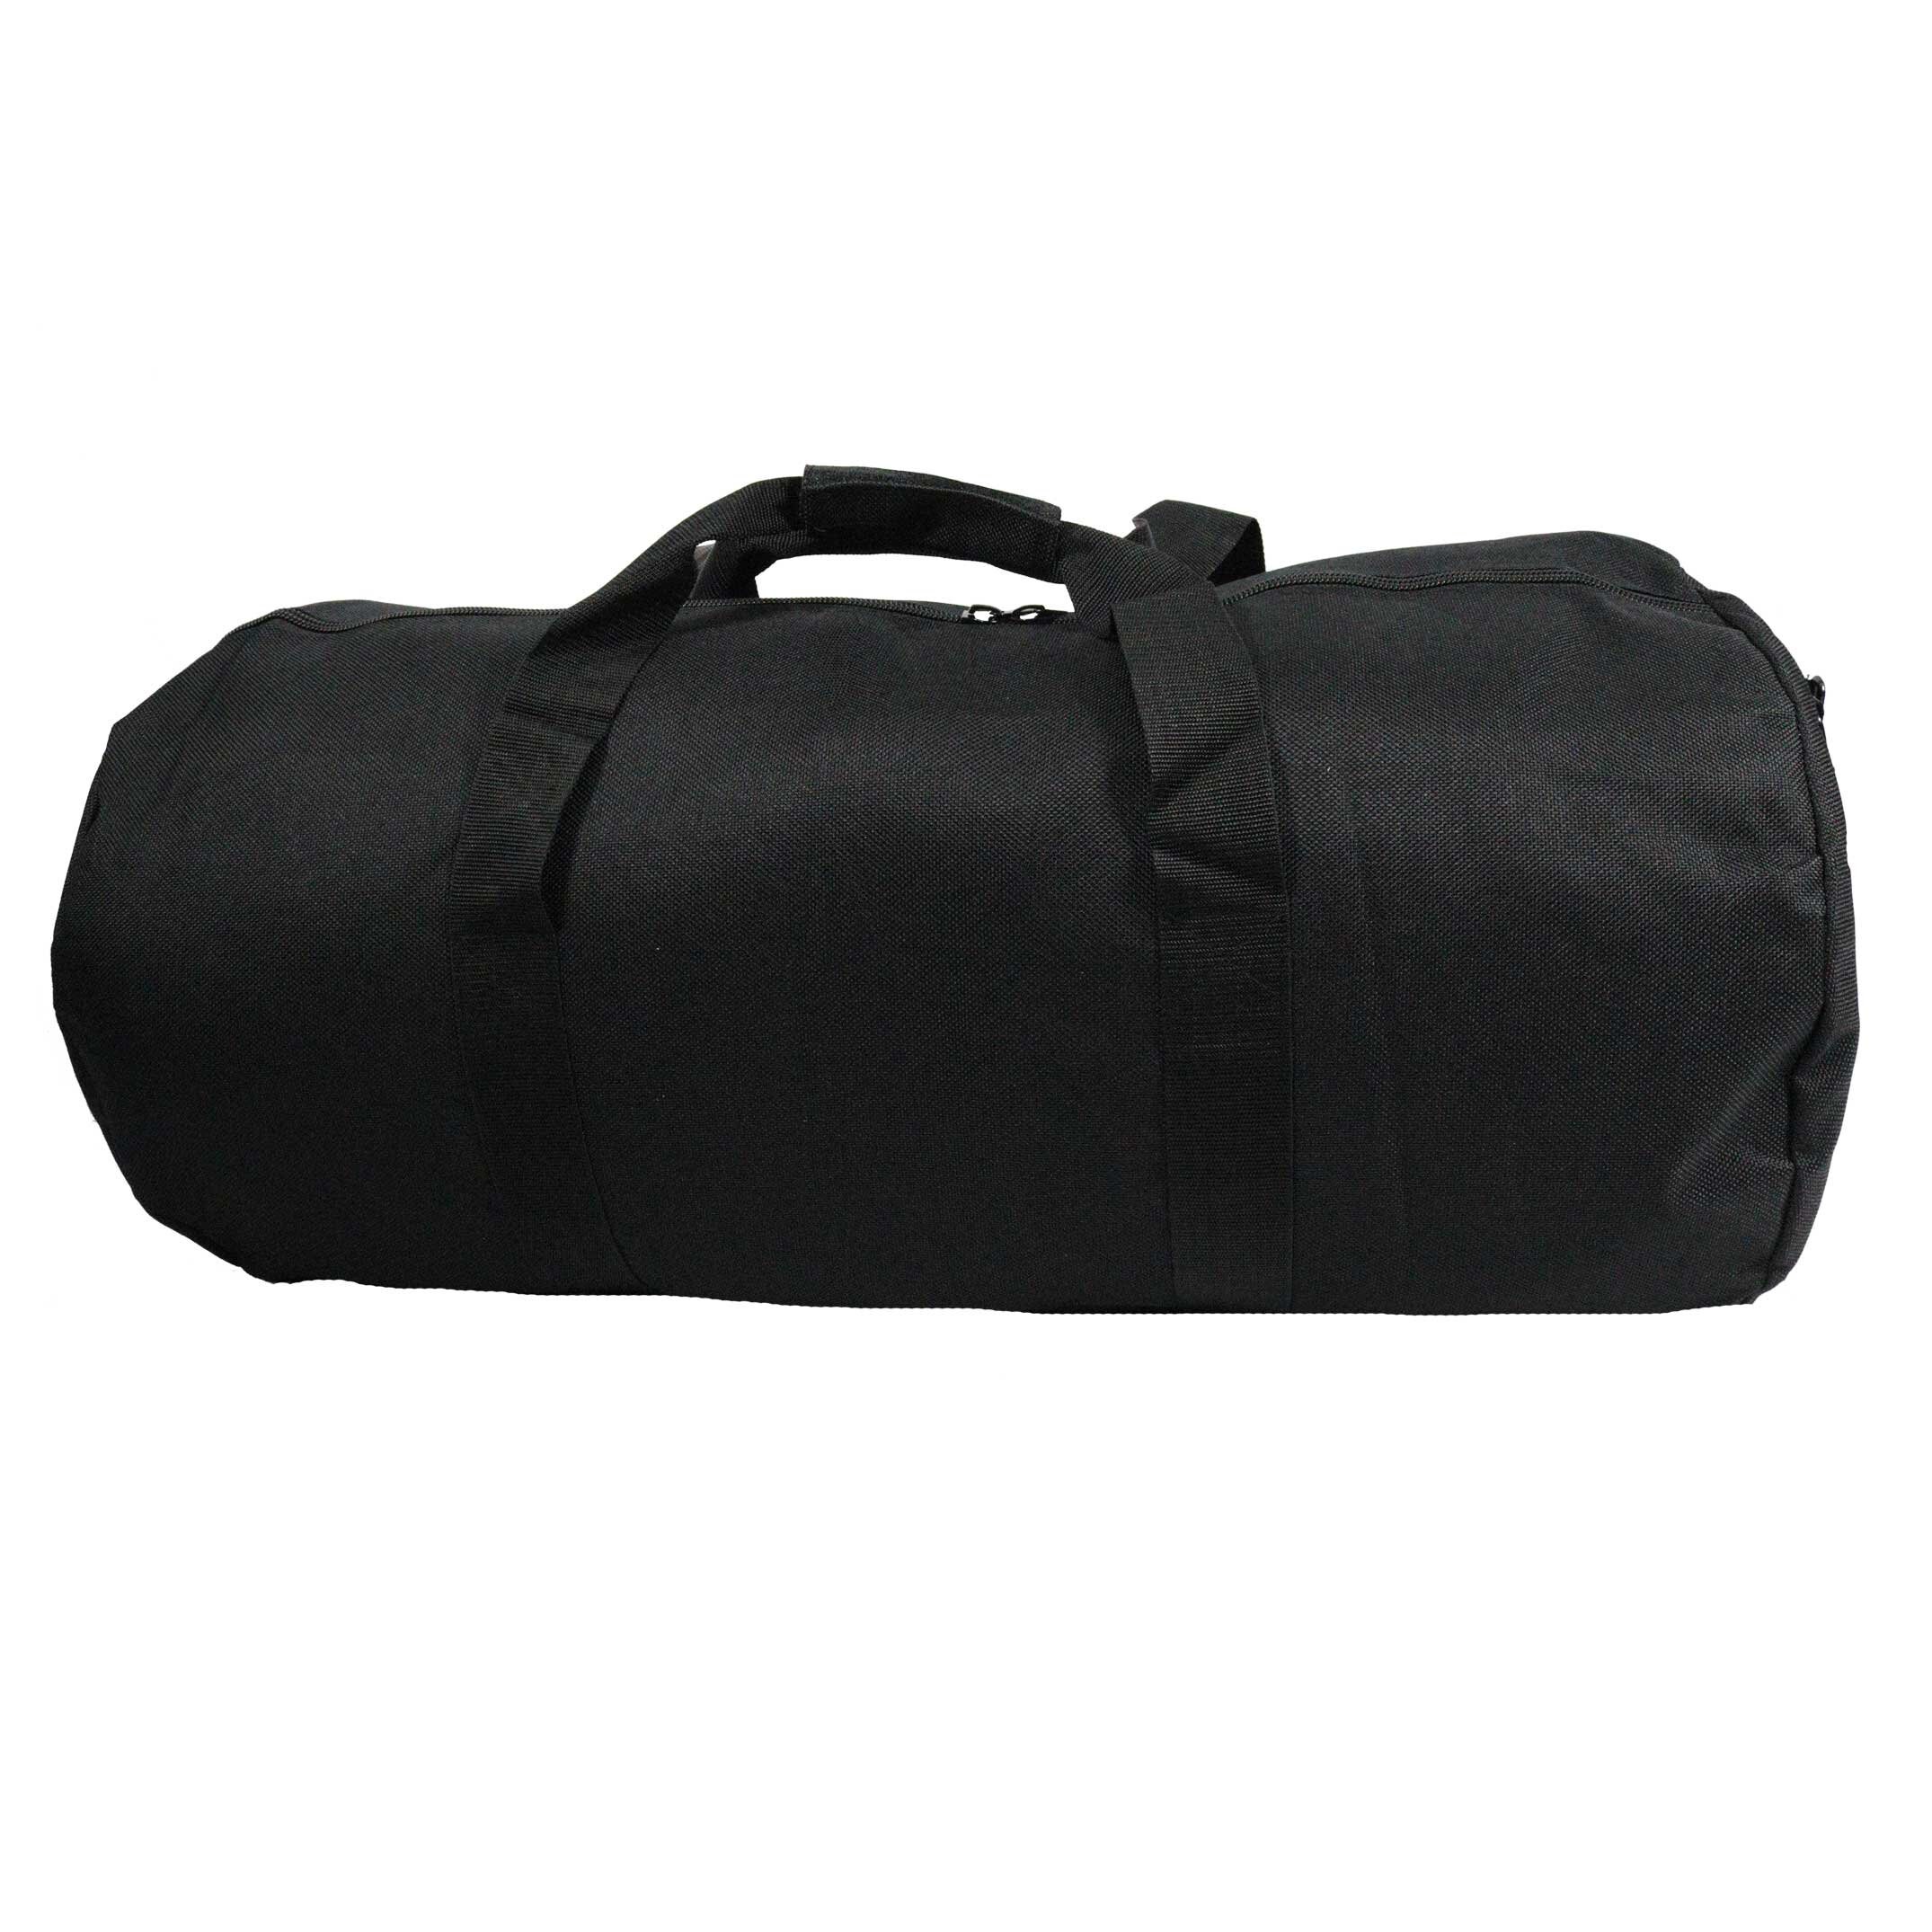 56 Long Duffle Bag, DuffelGear